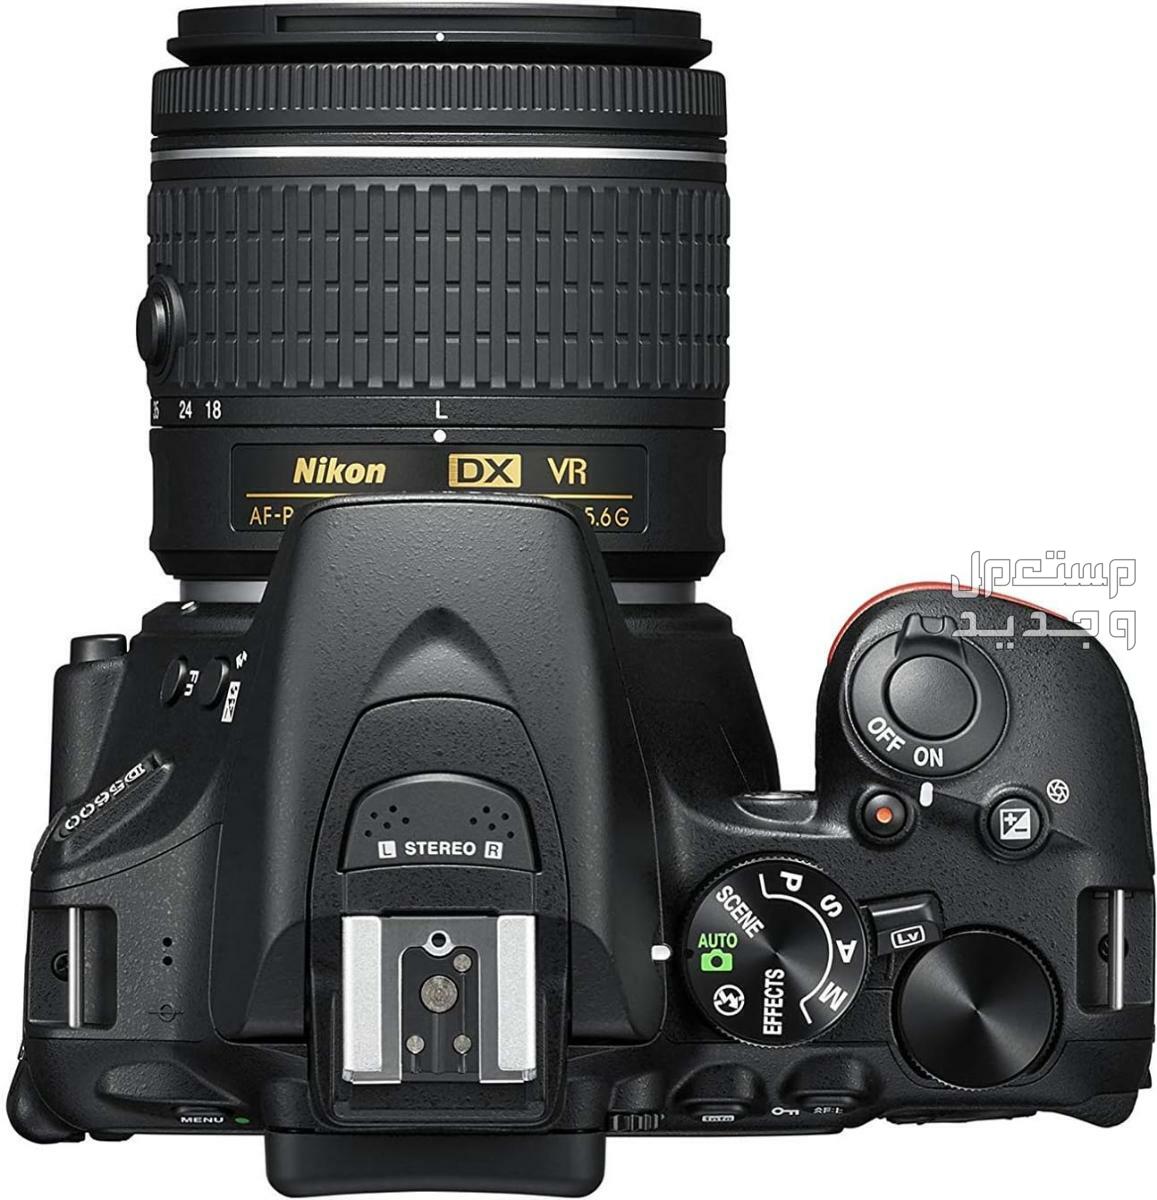 10 كاميرات تصوير ماركات عالمية بأسعار رخيصة في الكويت مميزات كاميرا Nikon D5600